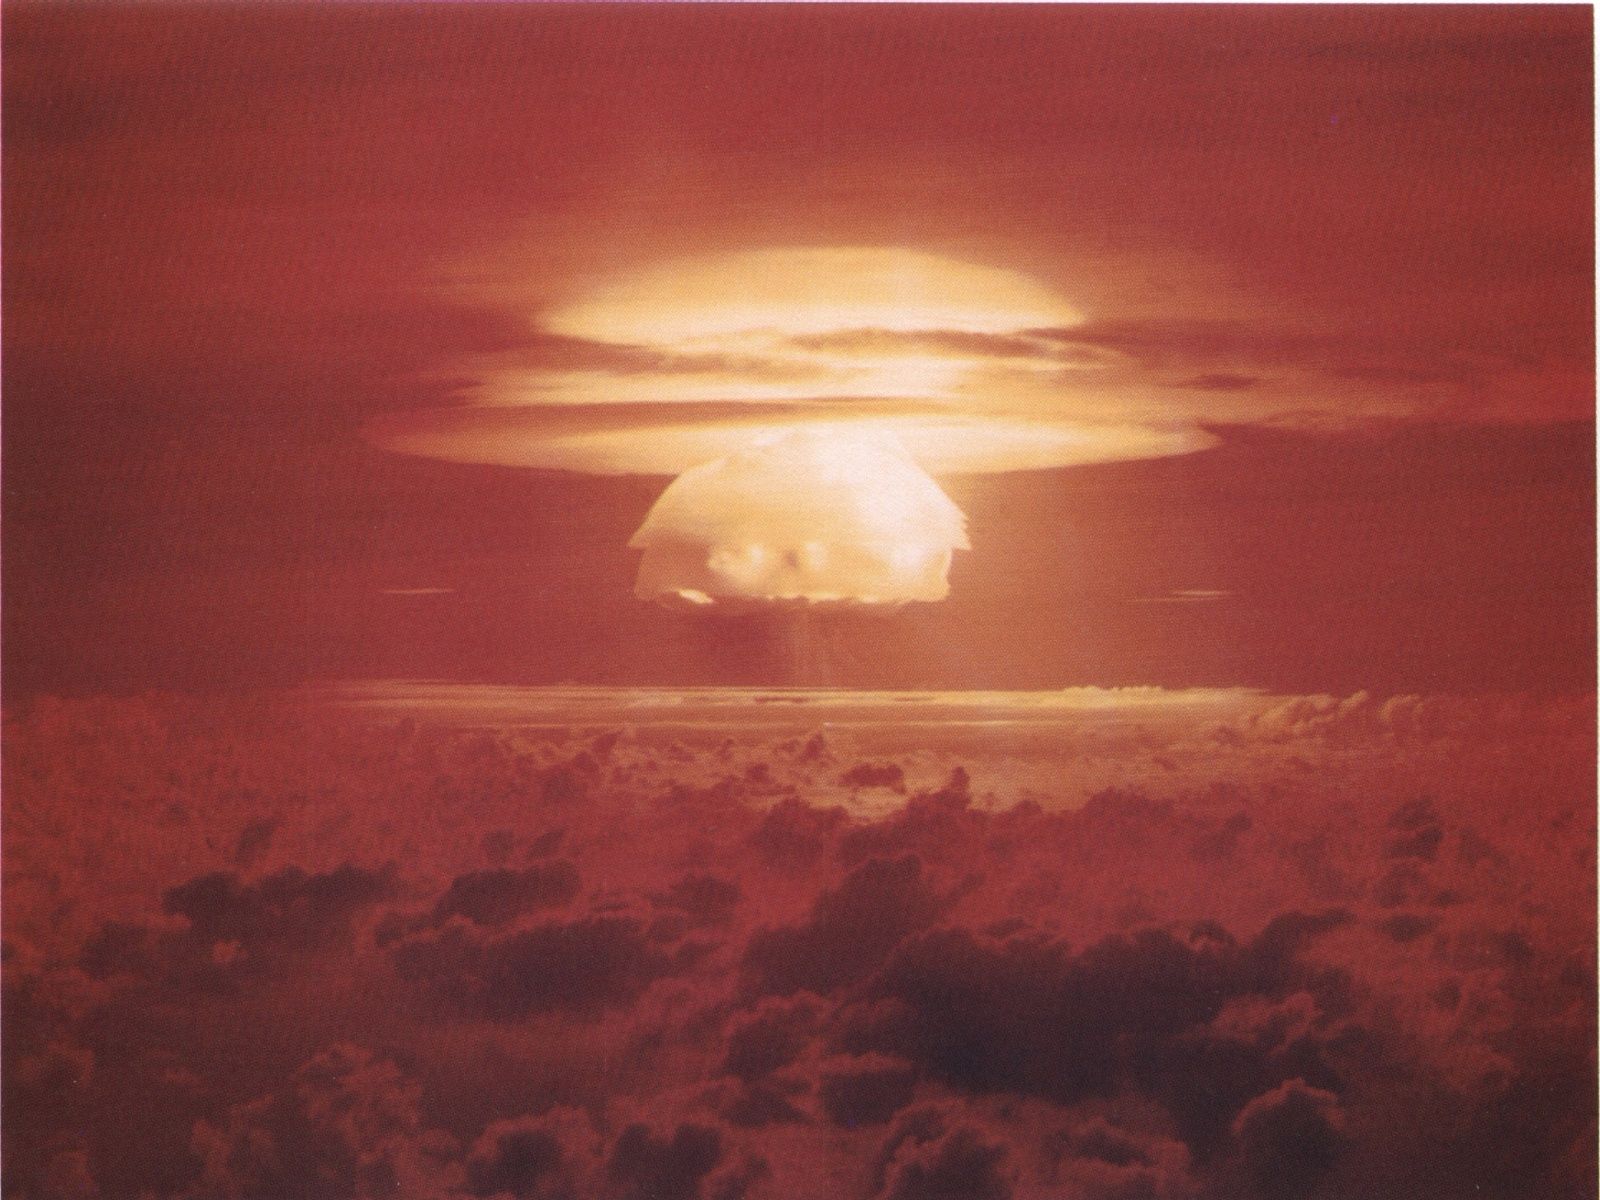 5 bom Nuklir terbesar yang pernah ada